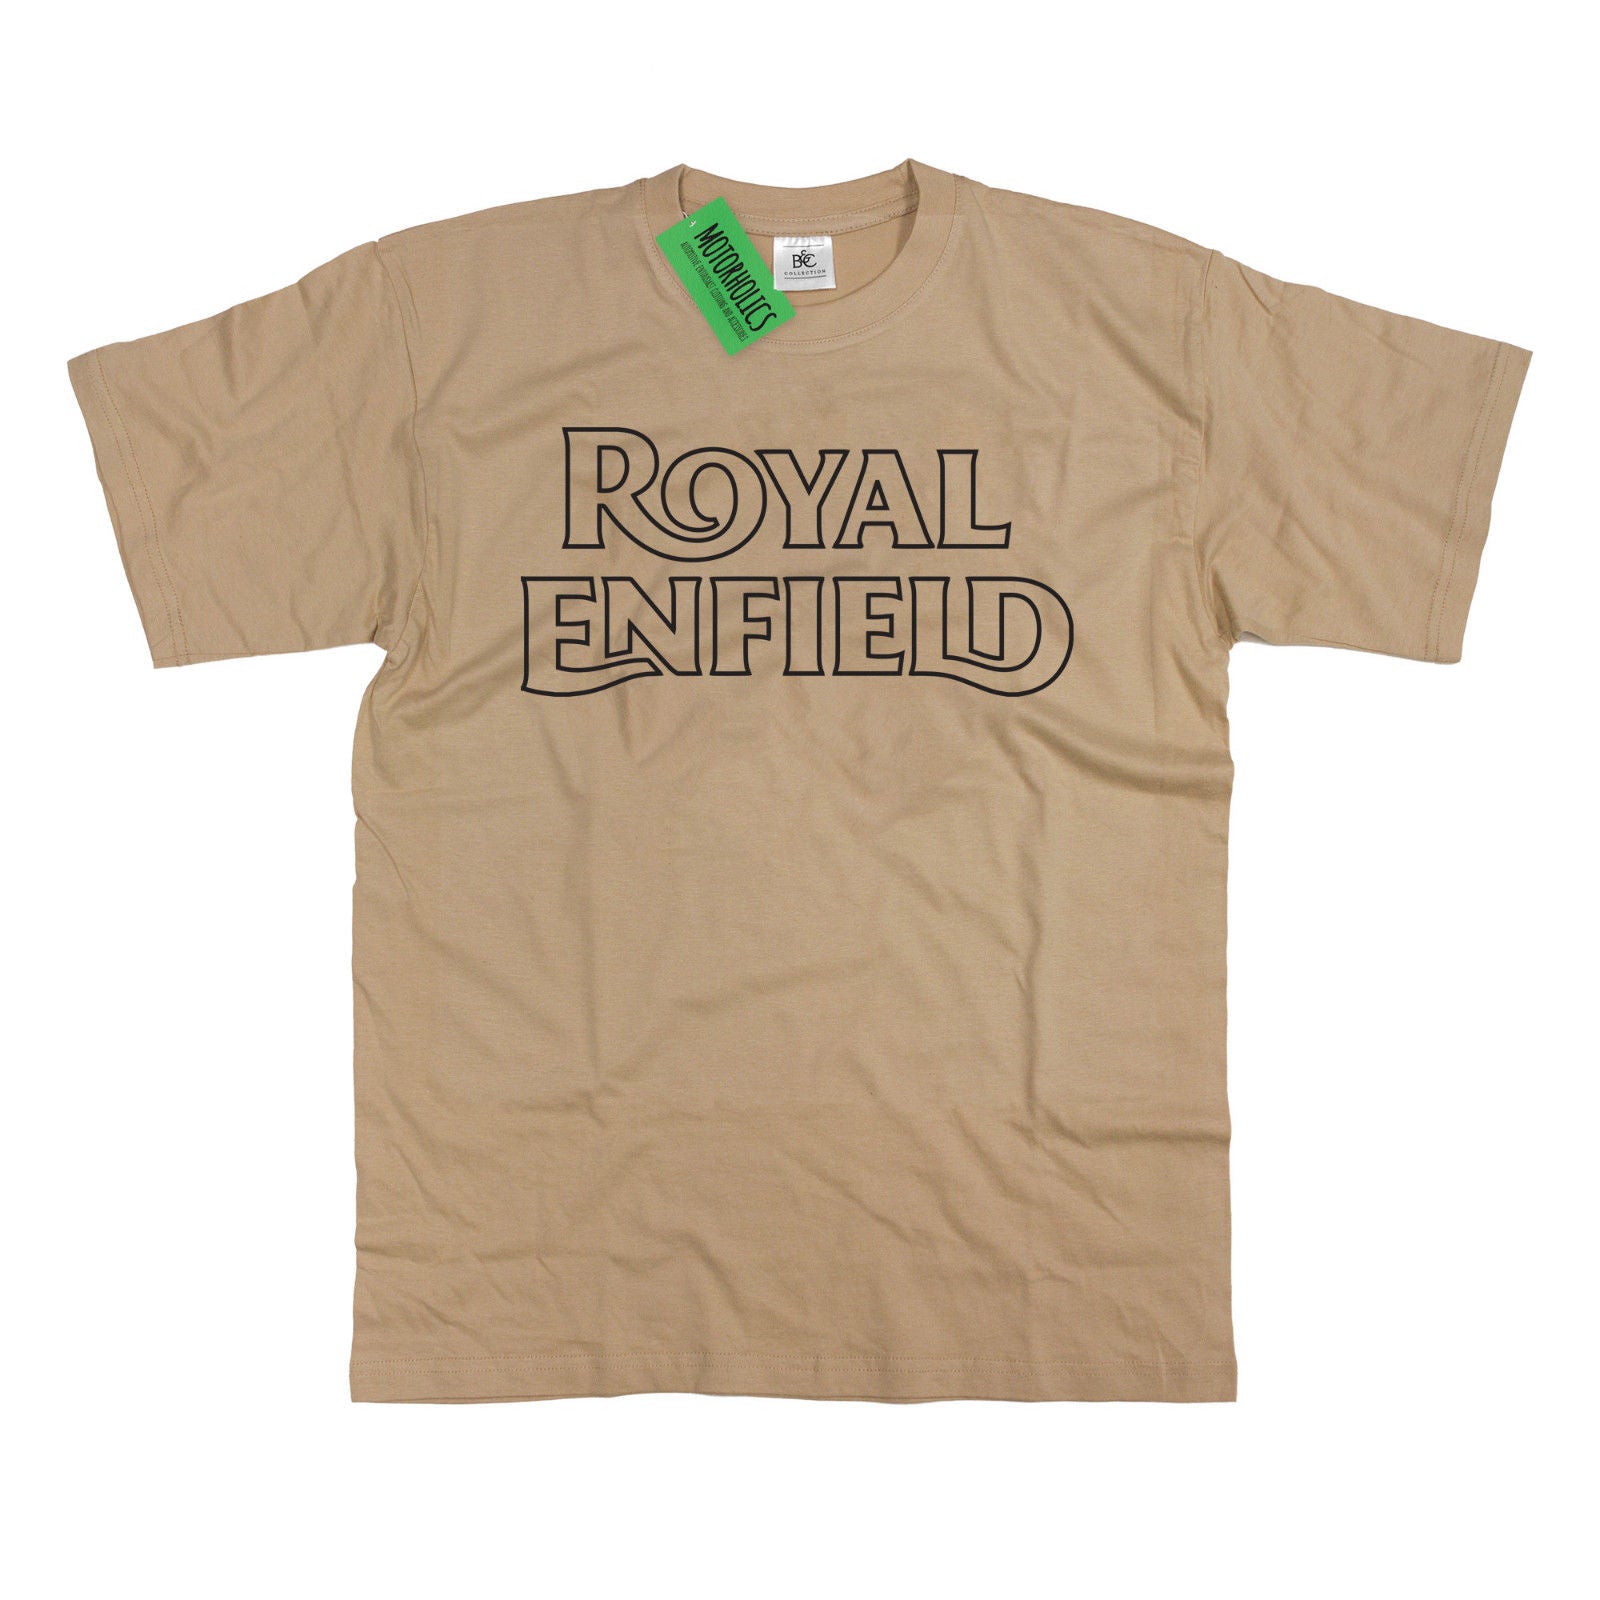 royal enfield t shirts uk